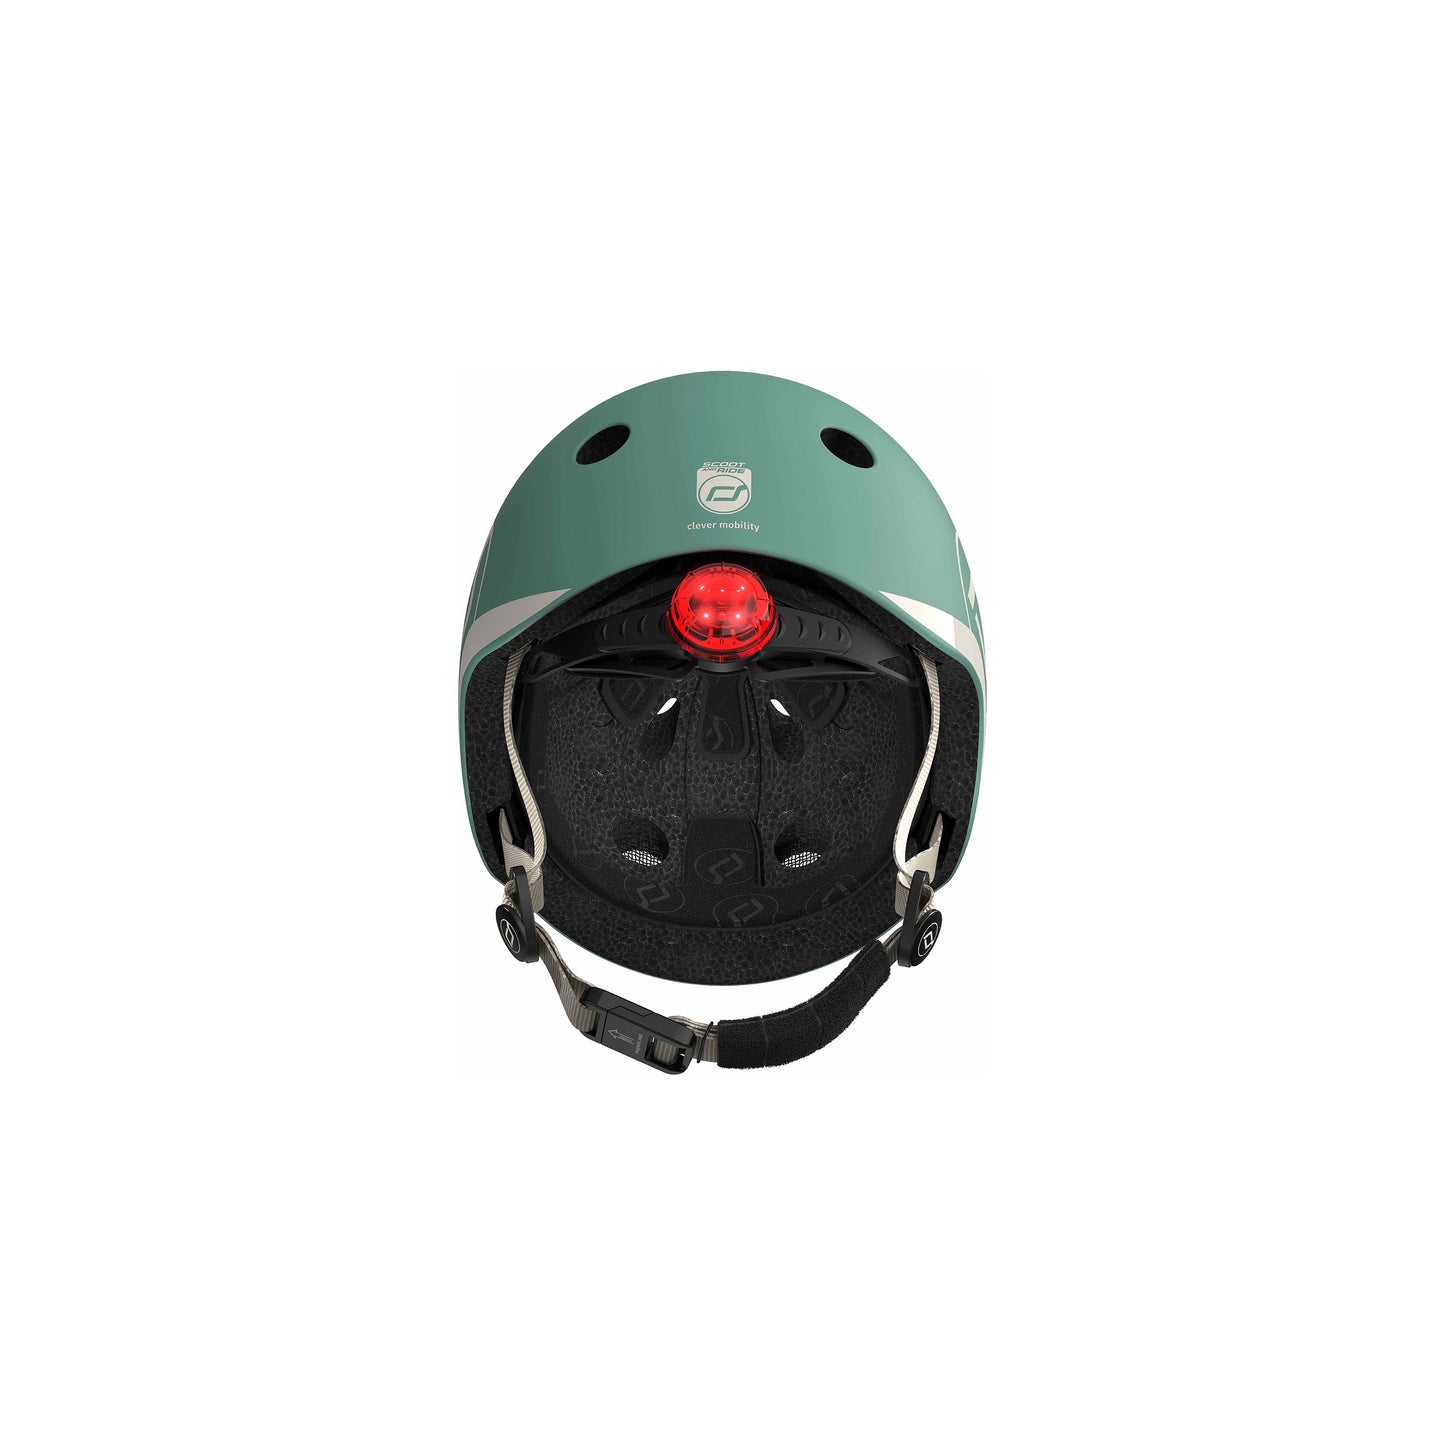 Scoot and Ride Helmet - XXS-S - 45-51cm